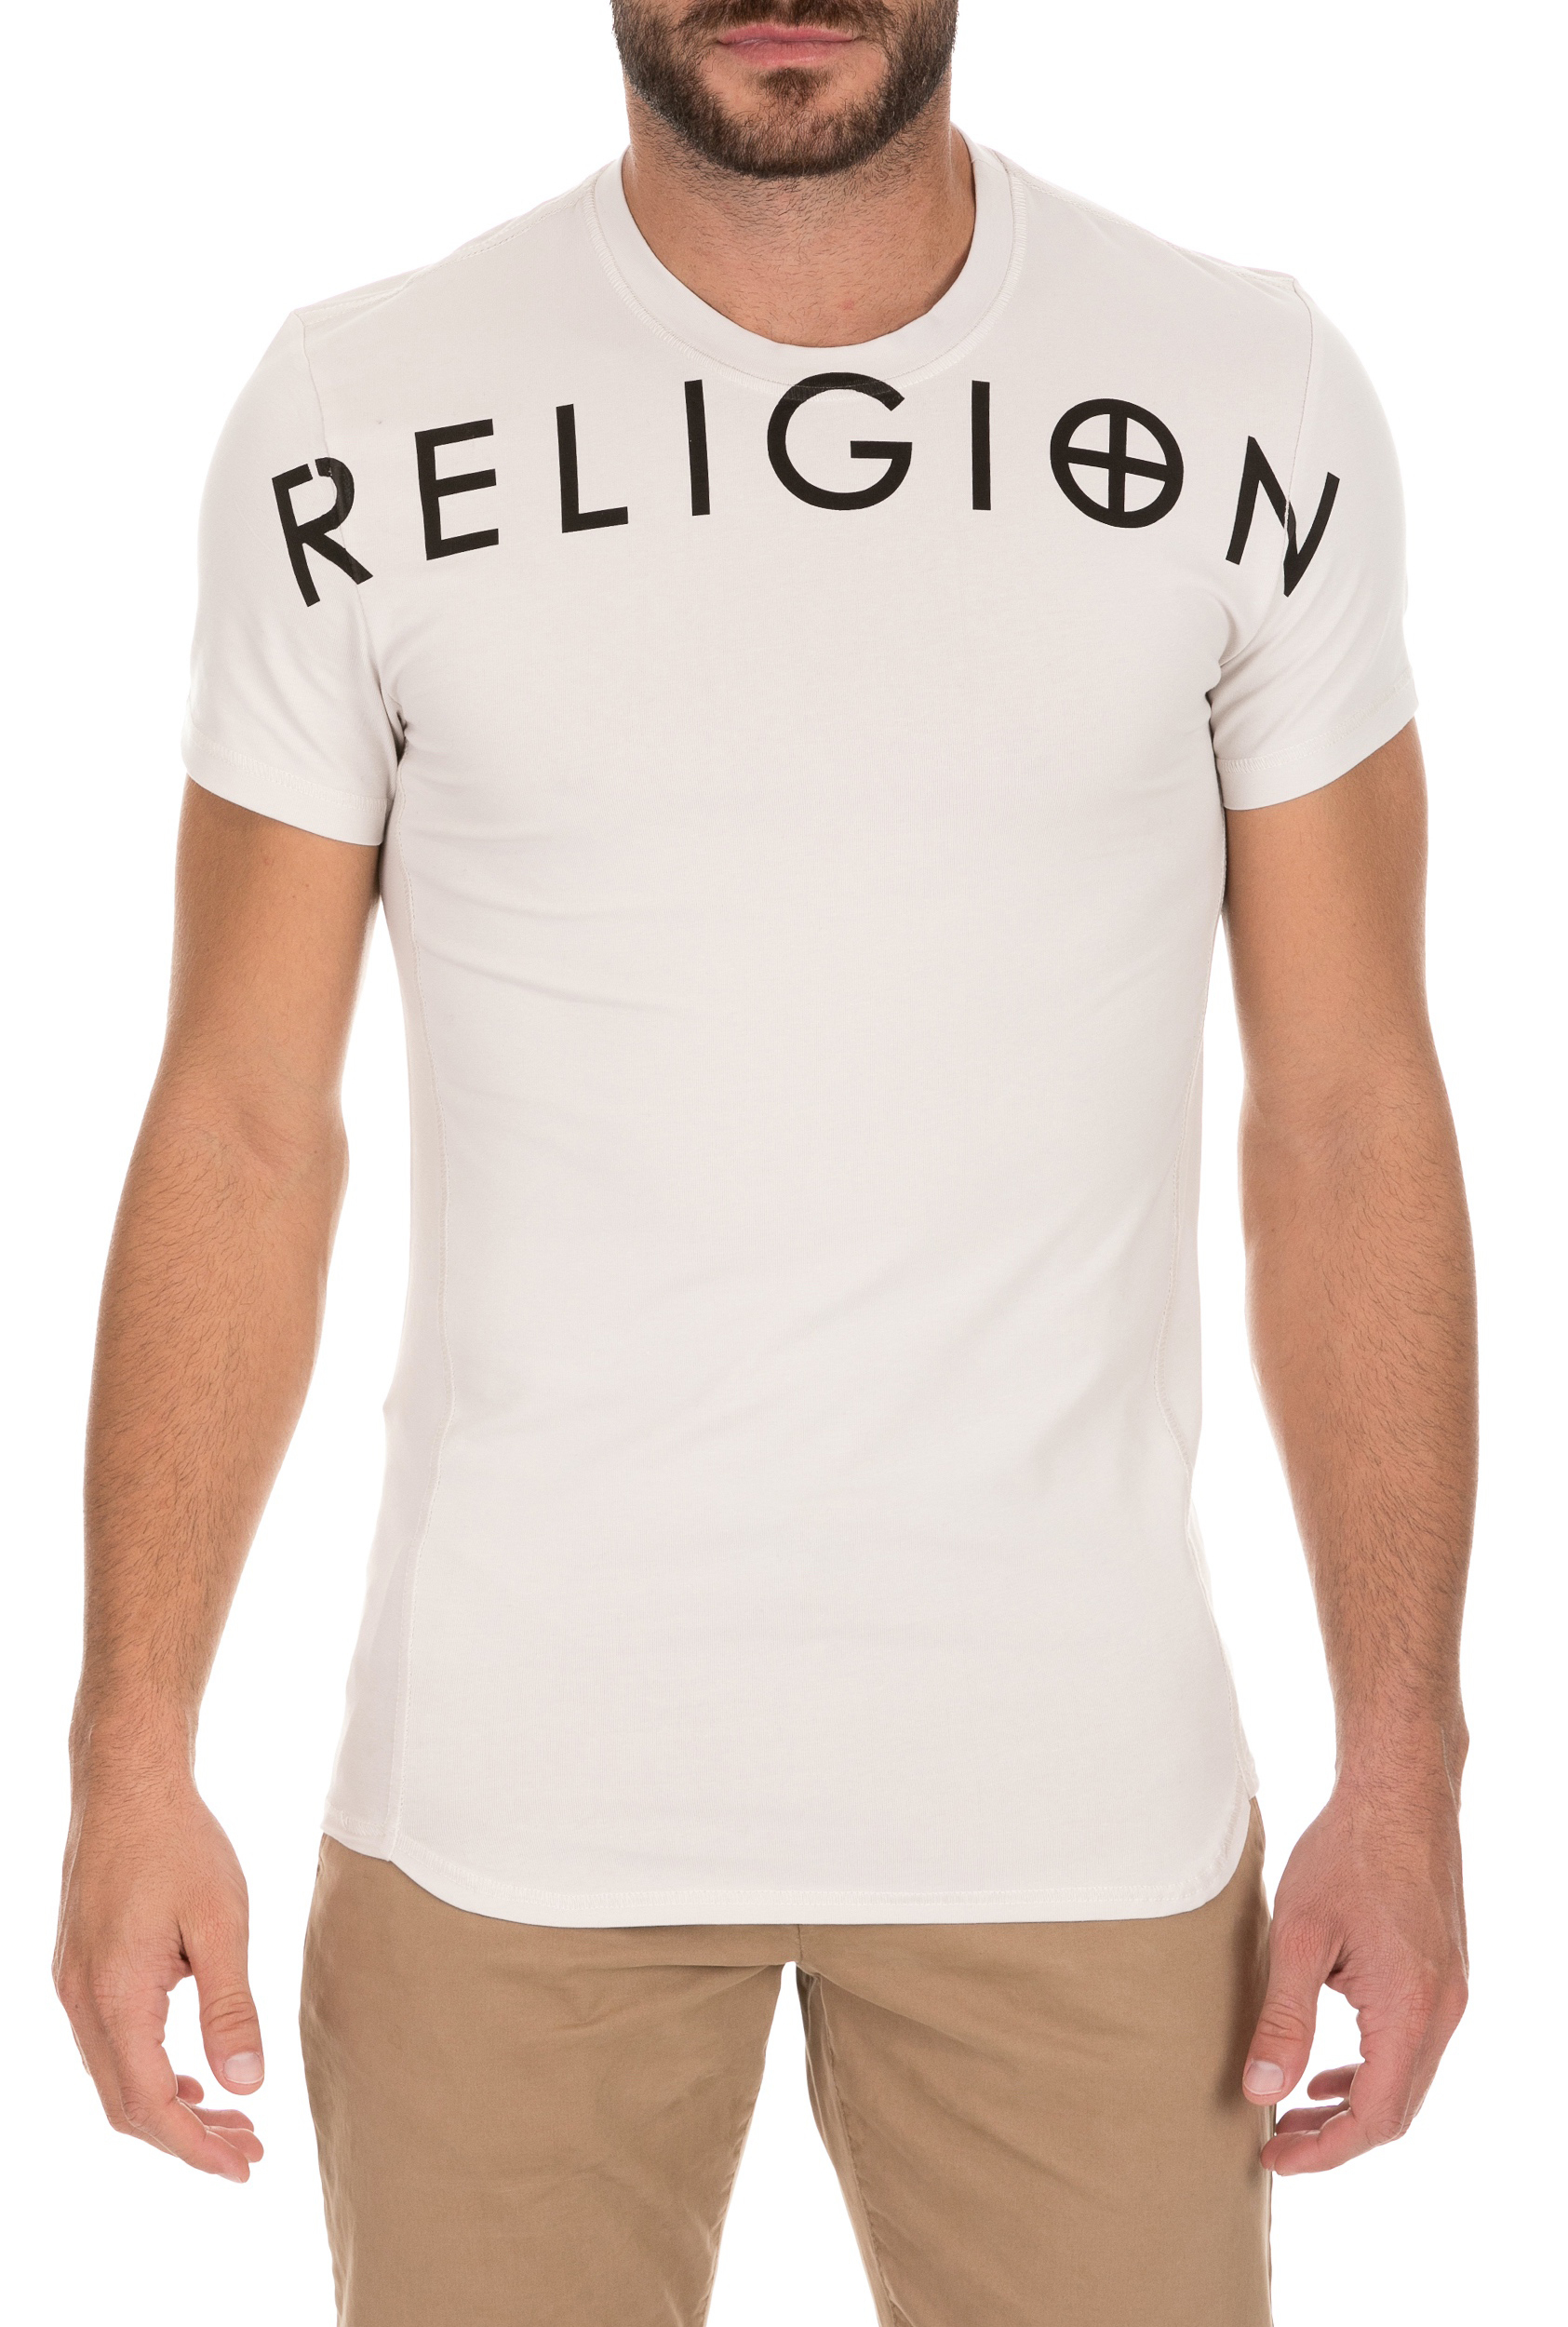 Ανδρικά/Ρούχα/Μπλούζες/Κοντομάνικες RELIGION - Ανδρικό t-shirt RELIGION GYM μπεζ